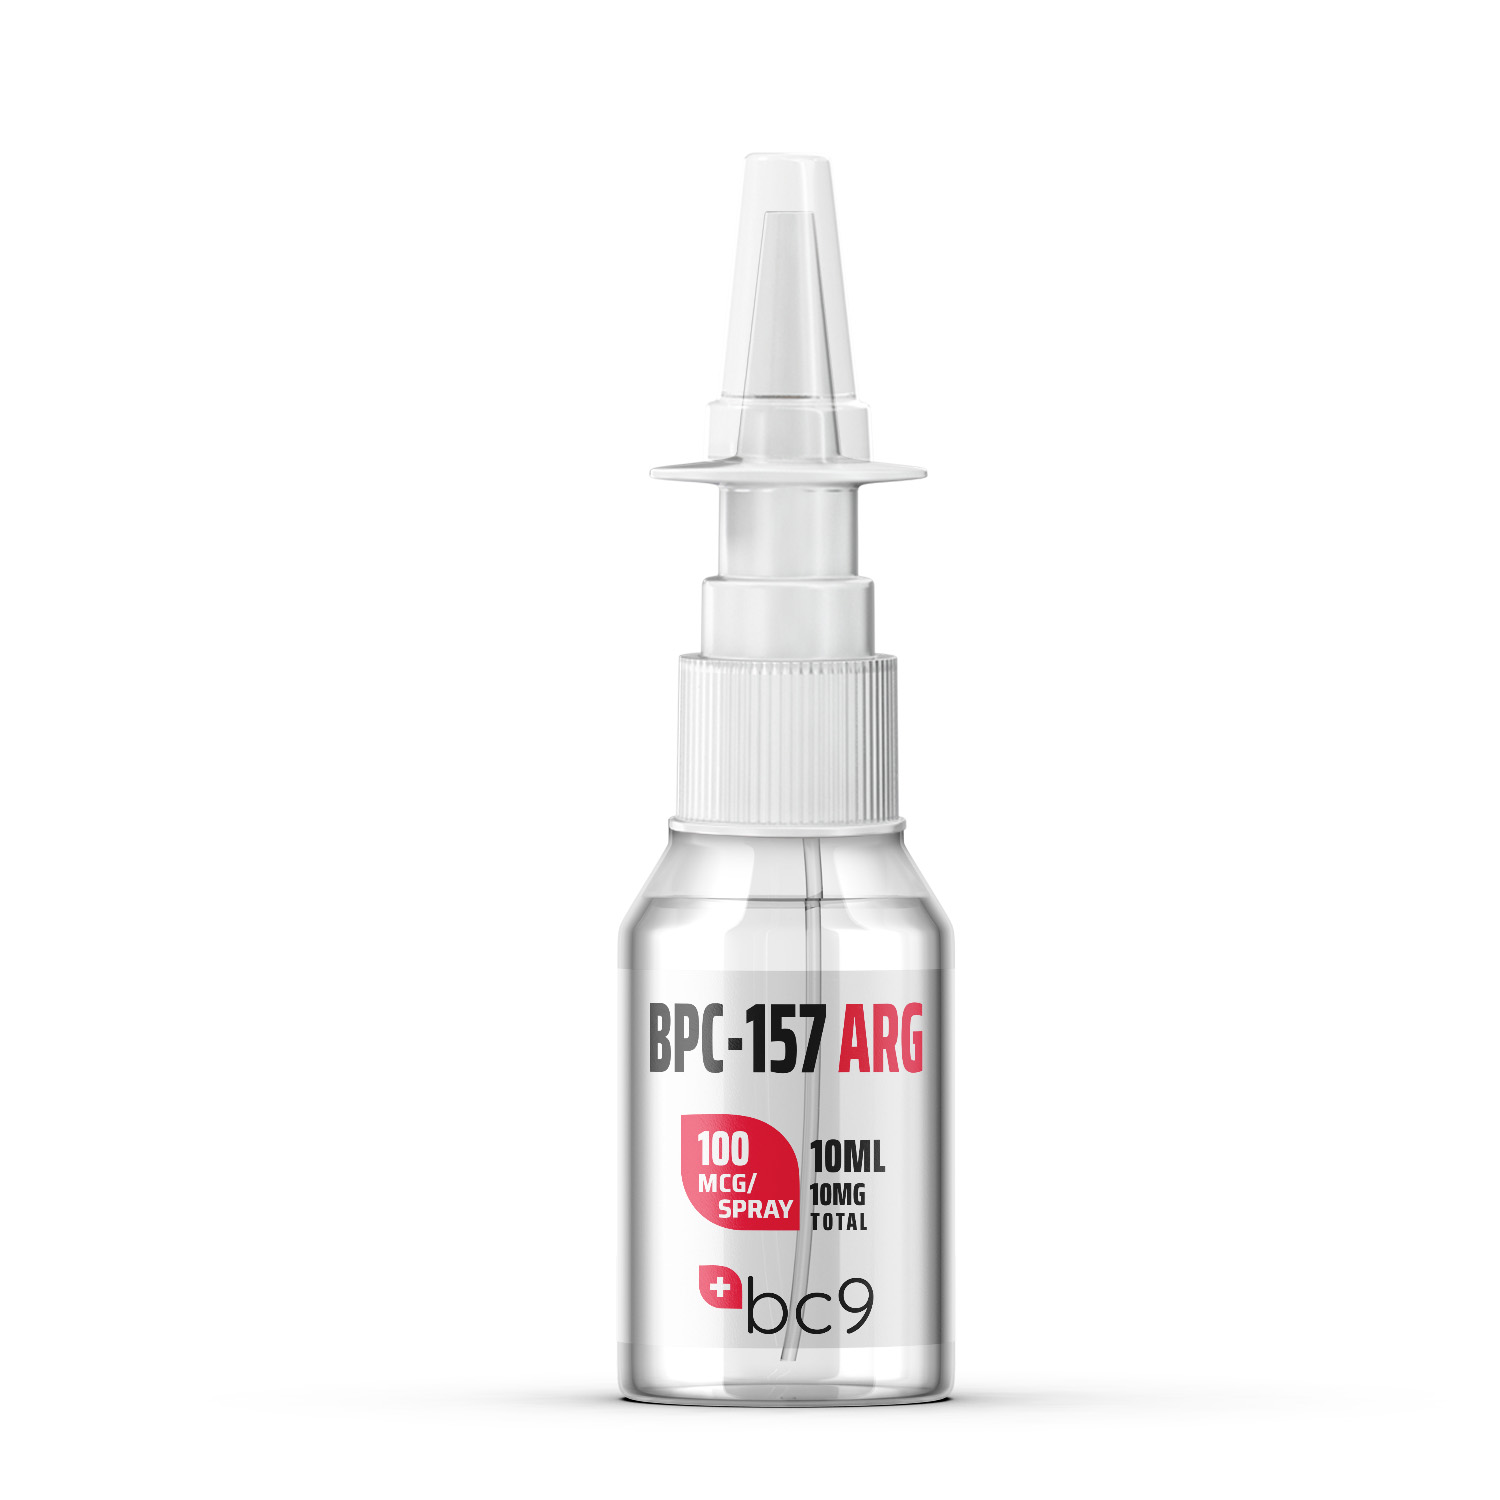 Buy BPC-157 ARG Nasal Spray For Sale | BC9.org